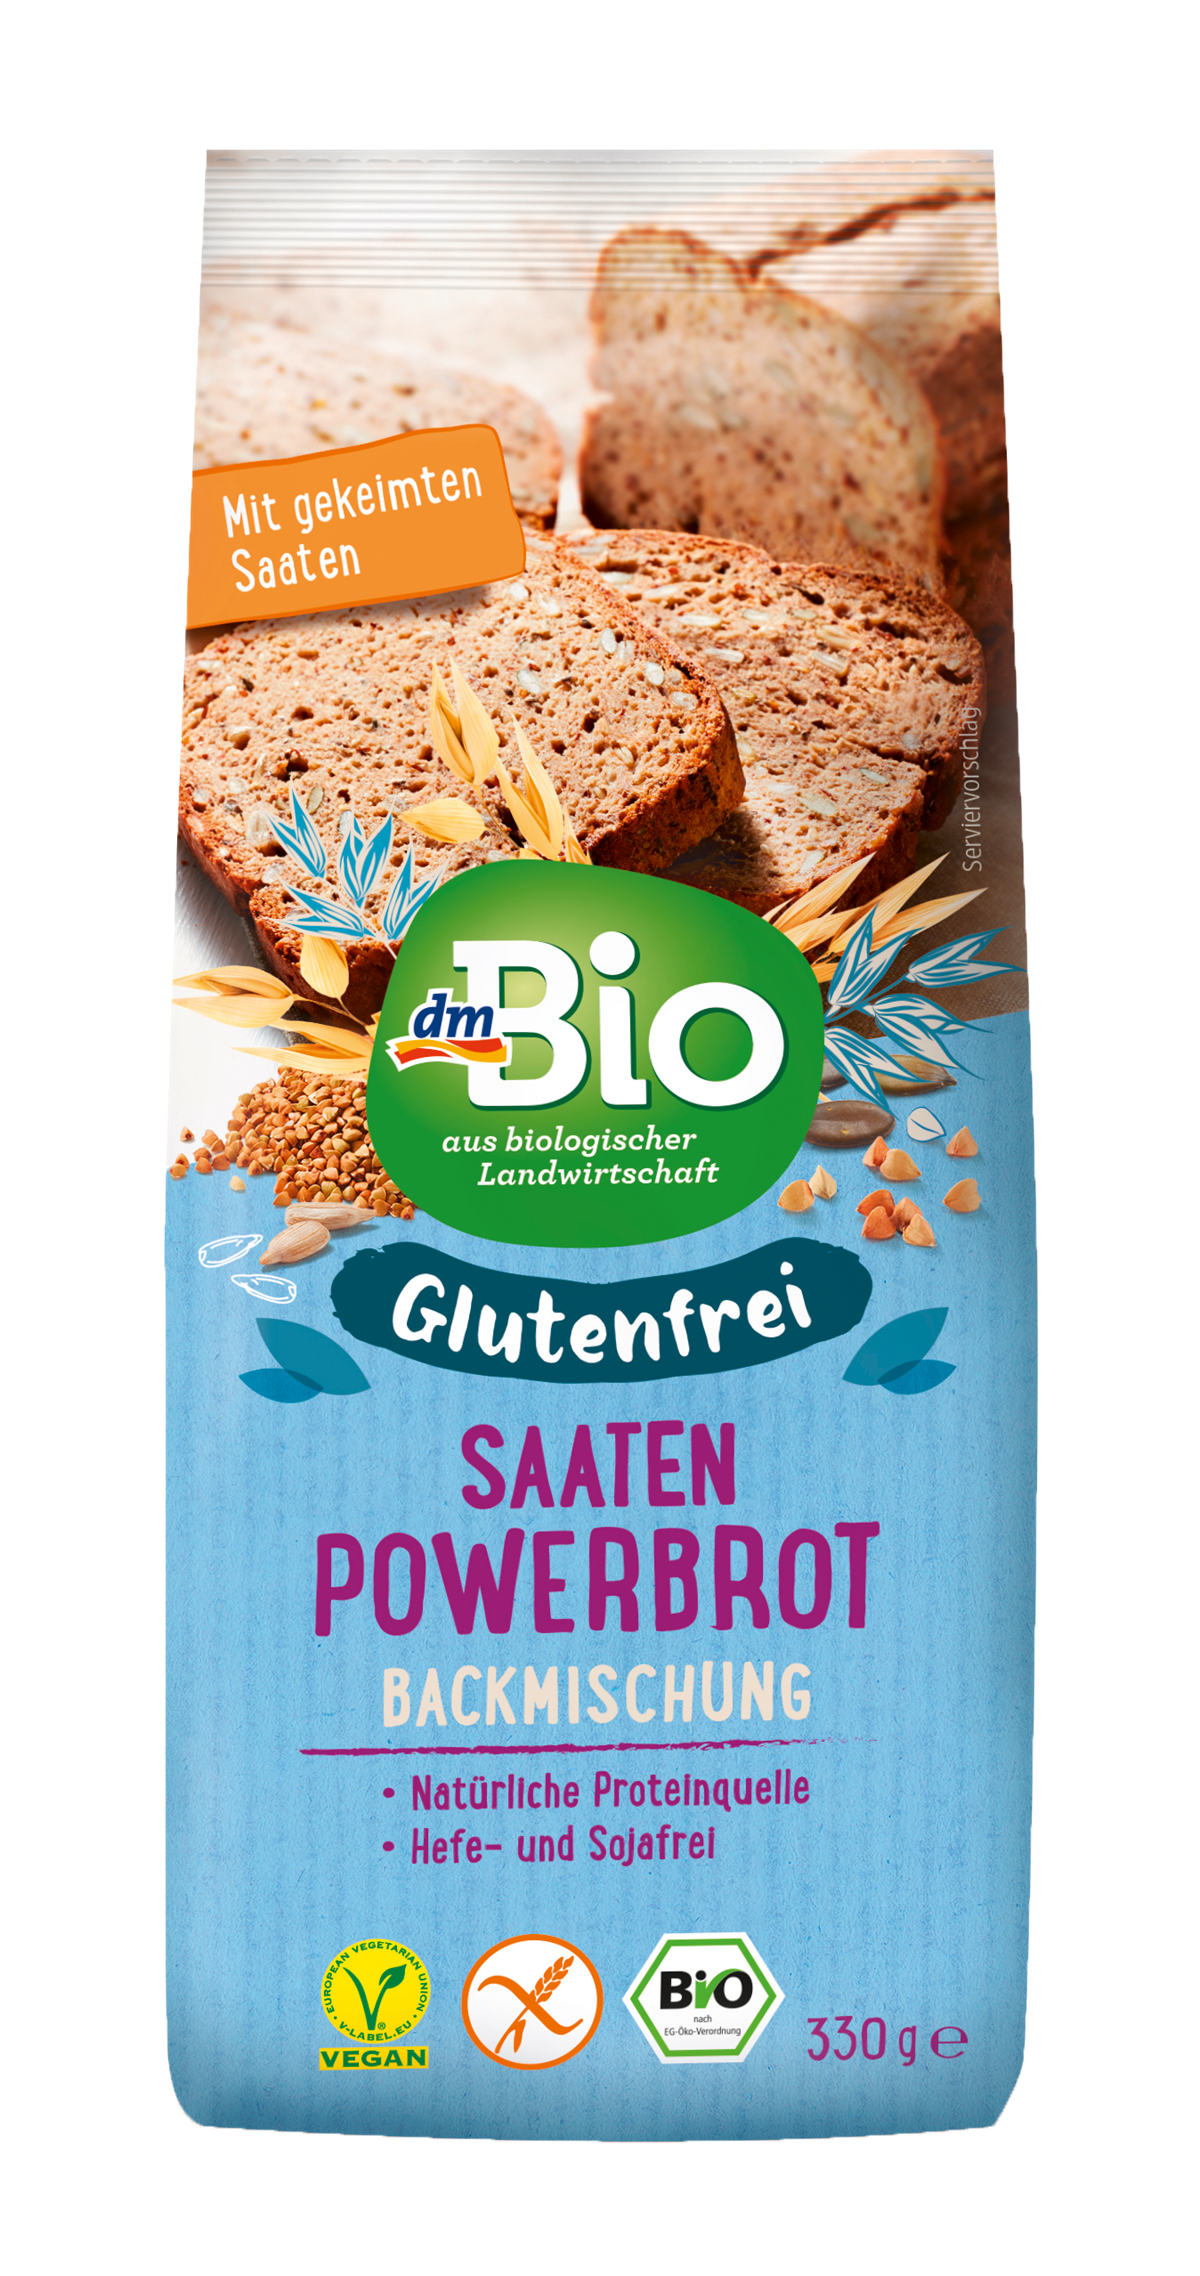 dmBio glutenfreies Saaten Powerbrot Backmischung (330 g): 3,45 €